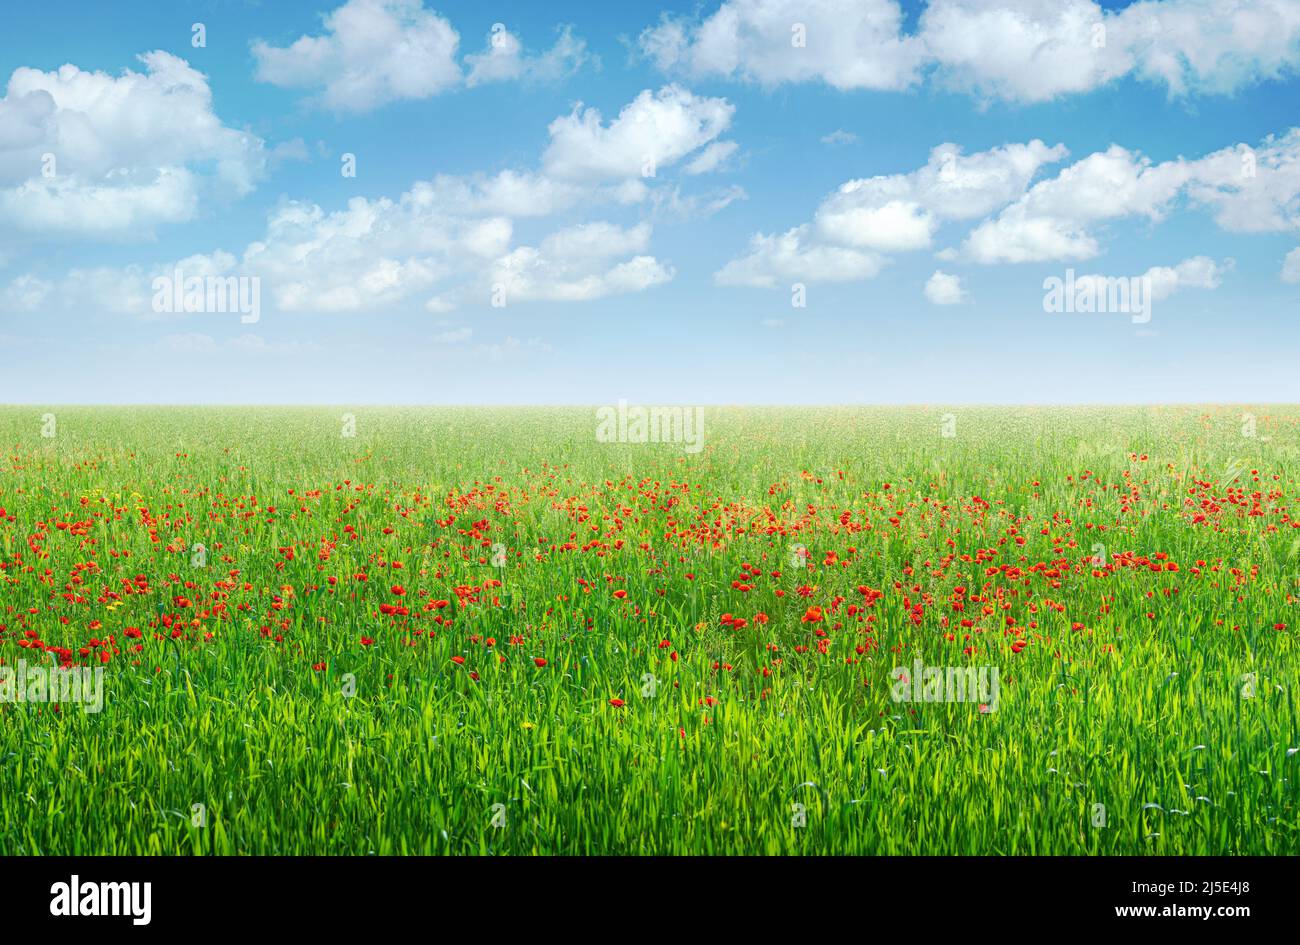 Grünes Feld mit roten Mohnblumen unter blauem Himmel mit Wolken, Frühlingslandschaft Hintergrund Stockfoto